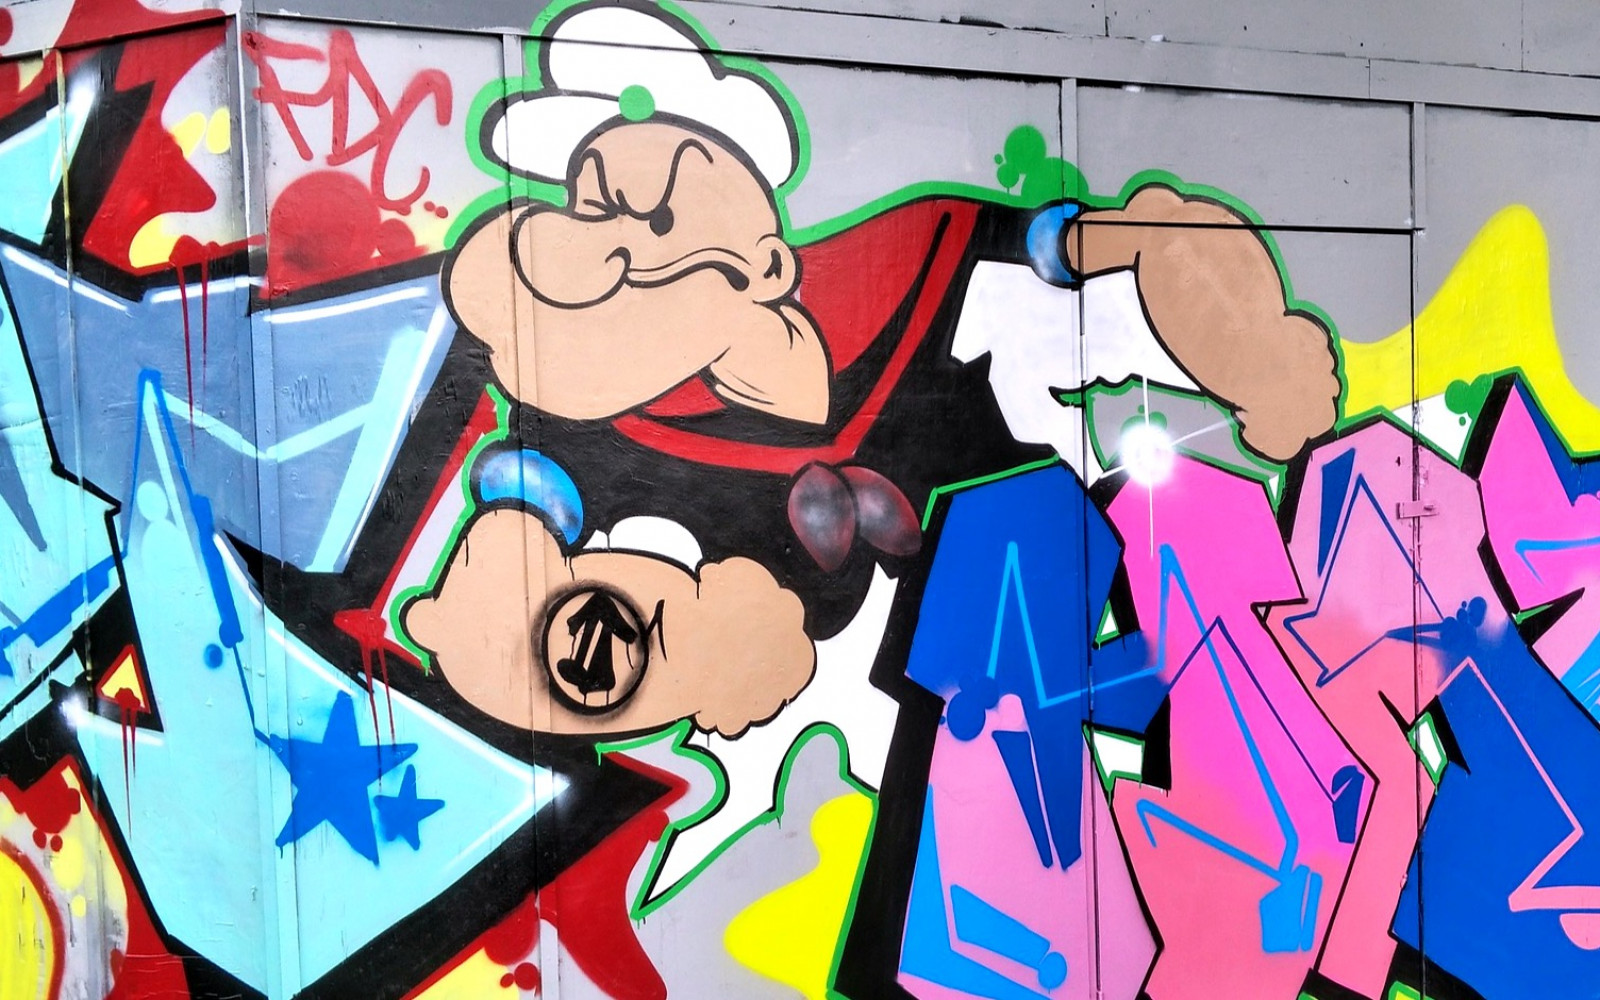 Graffiti Popeye (Richard442 @PixaBay)